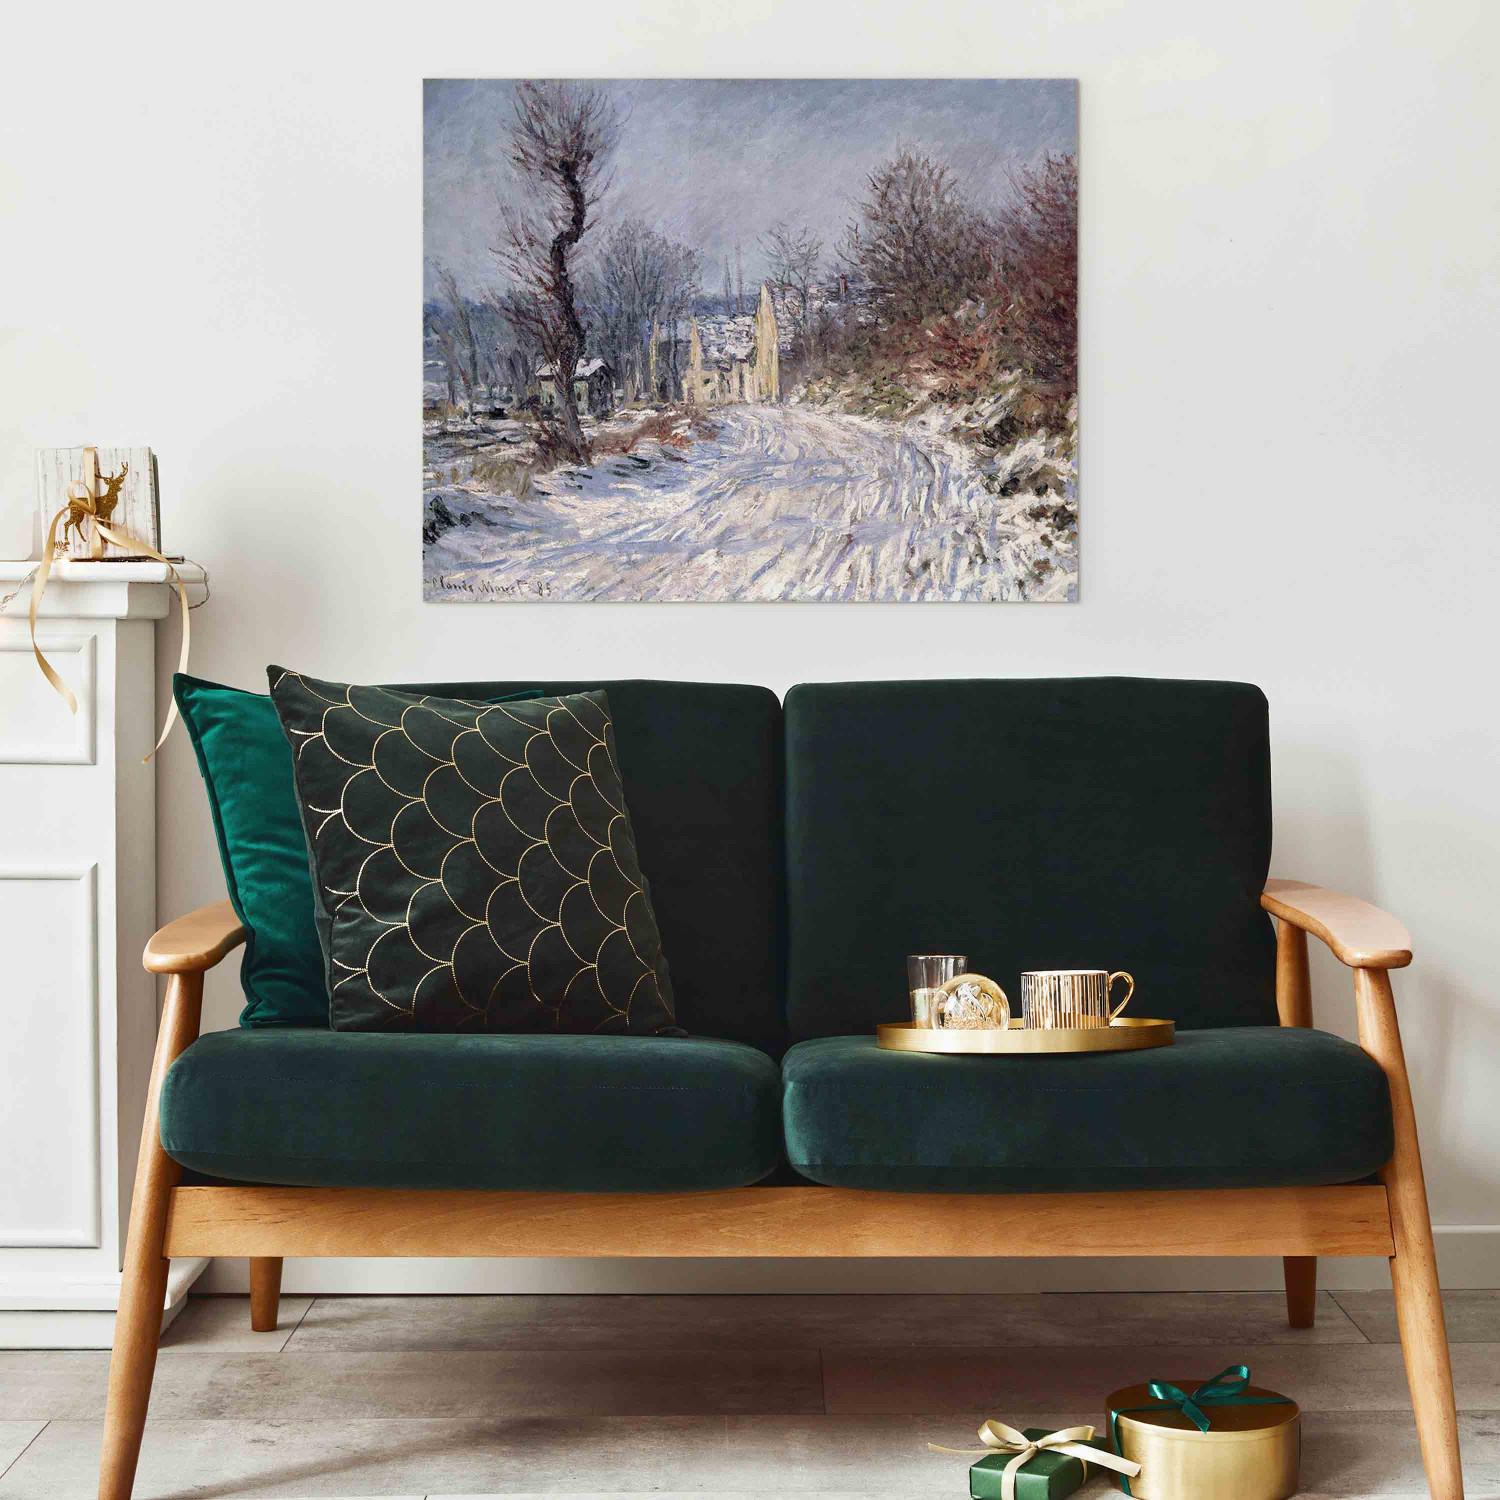 Reproducción de cuadro The Road to Giverny, Winter